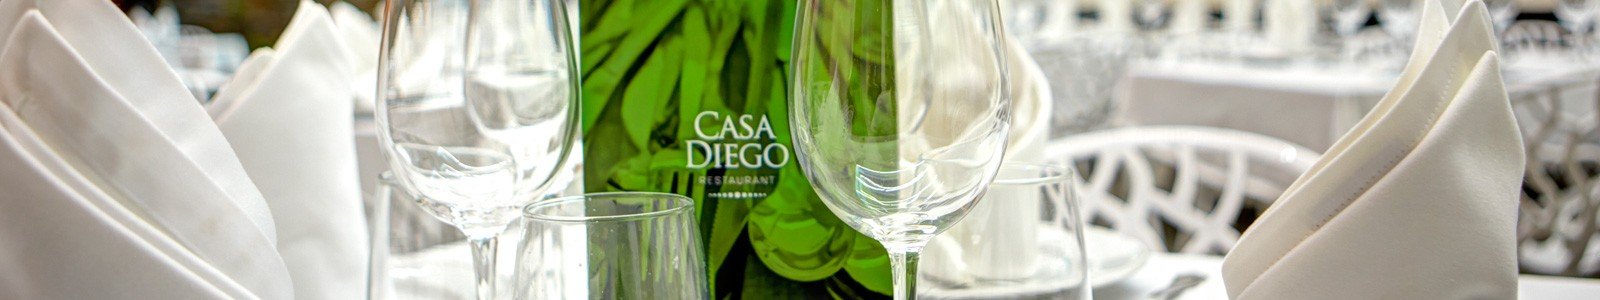 Nuestro Restaurante :: Restaurante Casa Diego, Monserrat